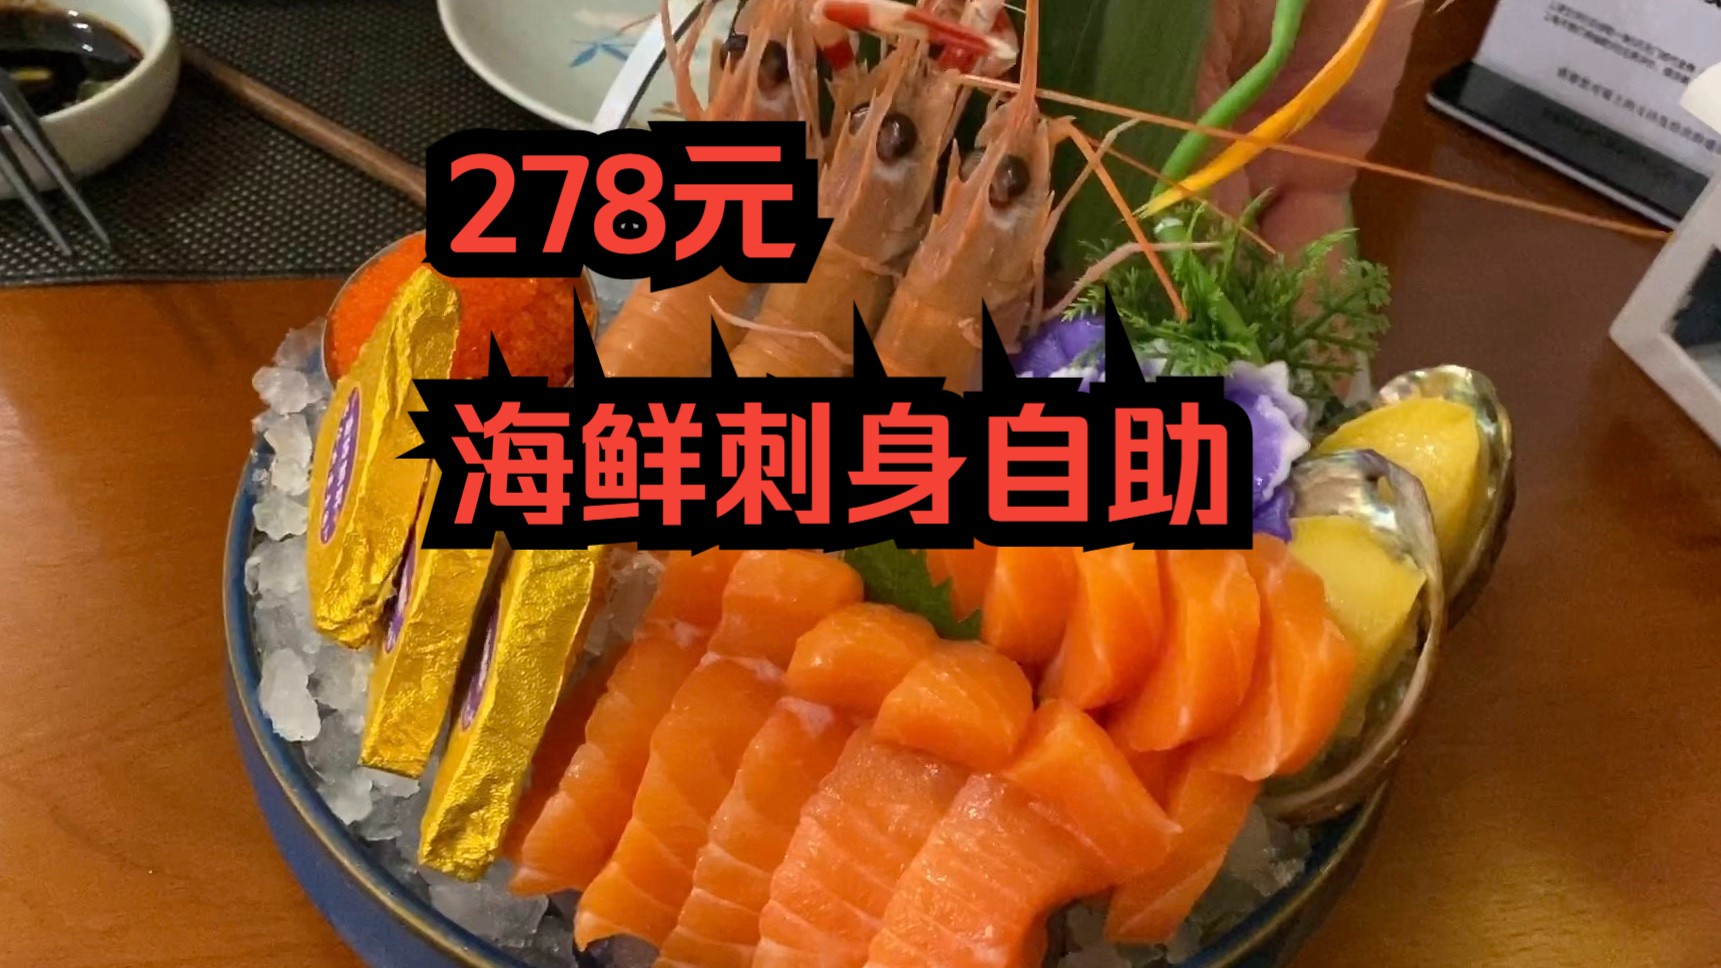 278元一个人，海鲜刺身自助餐，我能吃回本吗？